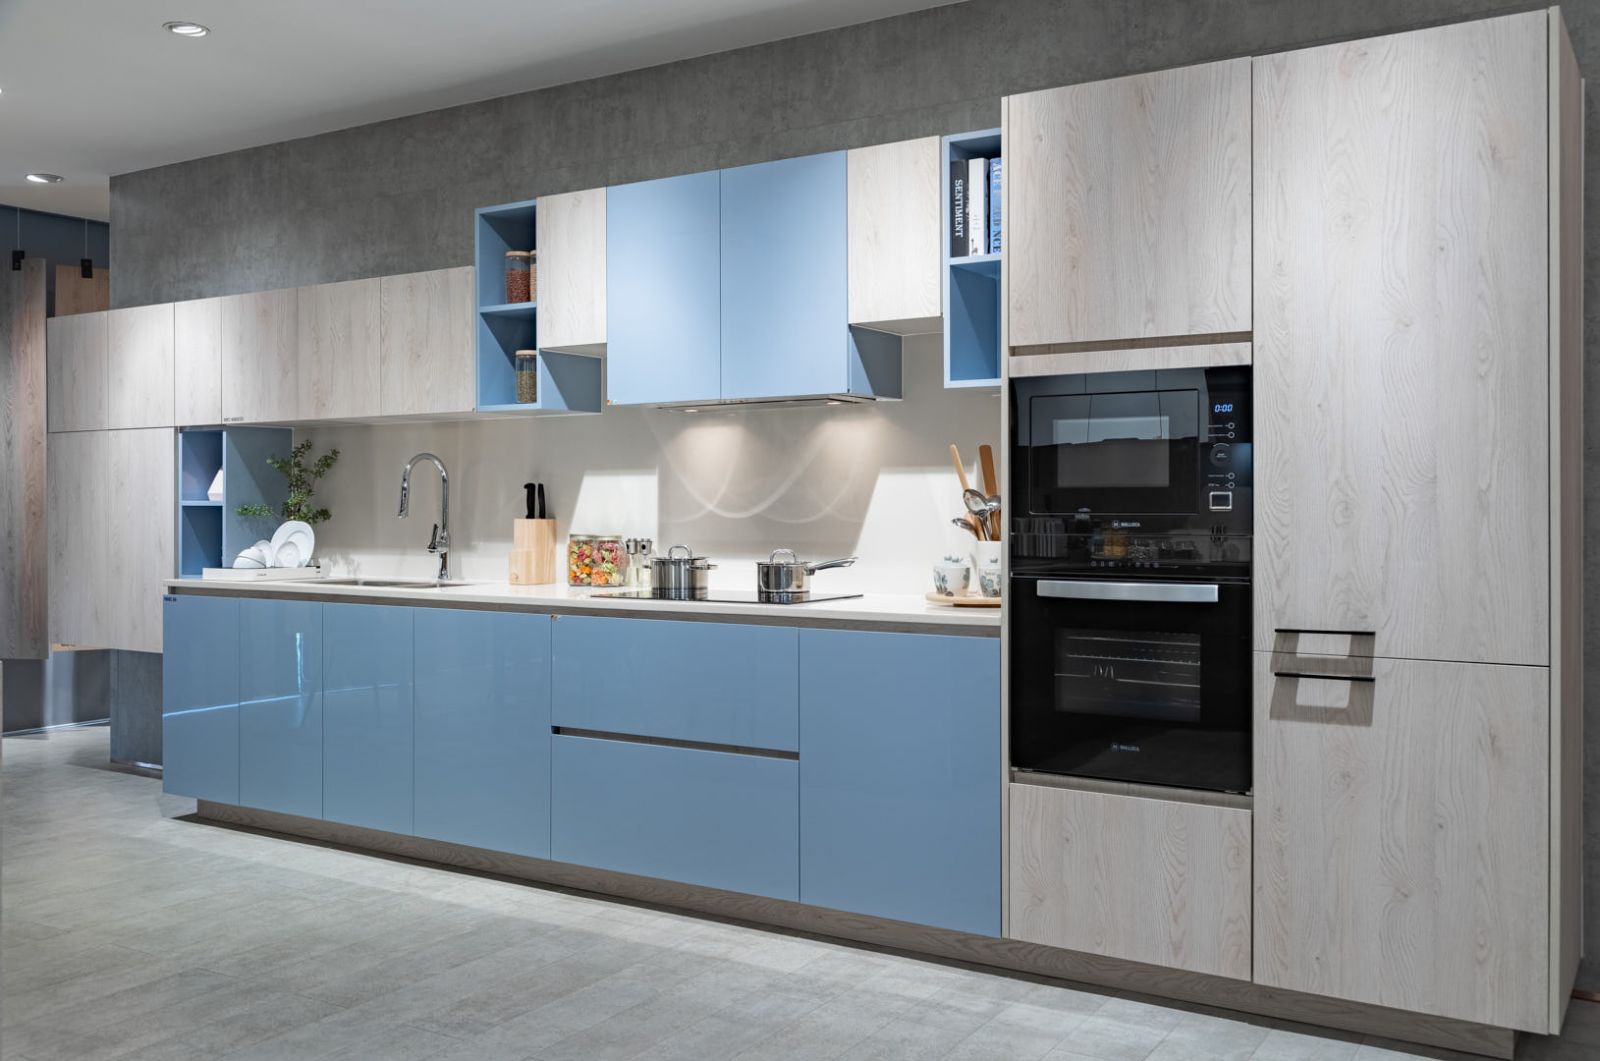 Tủ bếp Acrylic mầu xanh là một mẫu tủ bếp tươi sáng và thời thượng, tạo ra một cảm giác trẻ trung và sức sống cho bếp.